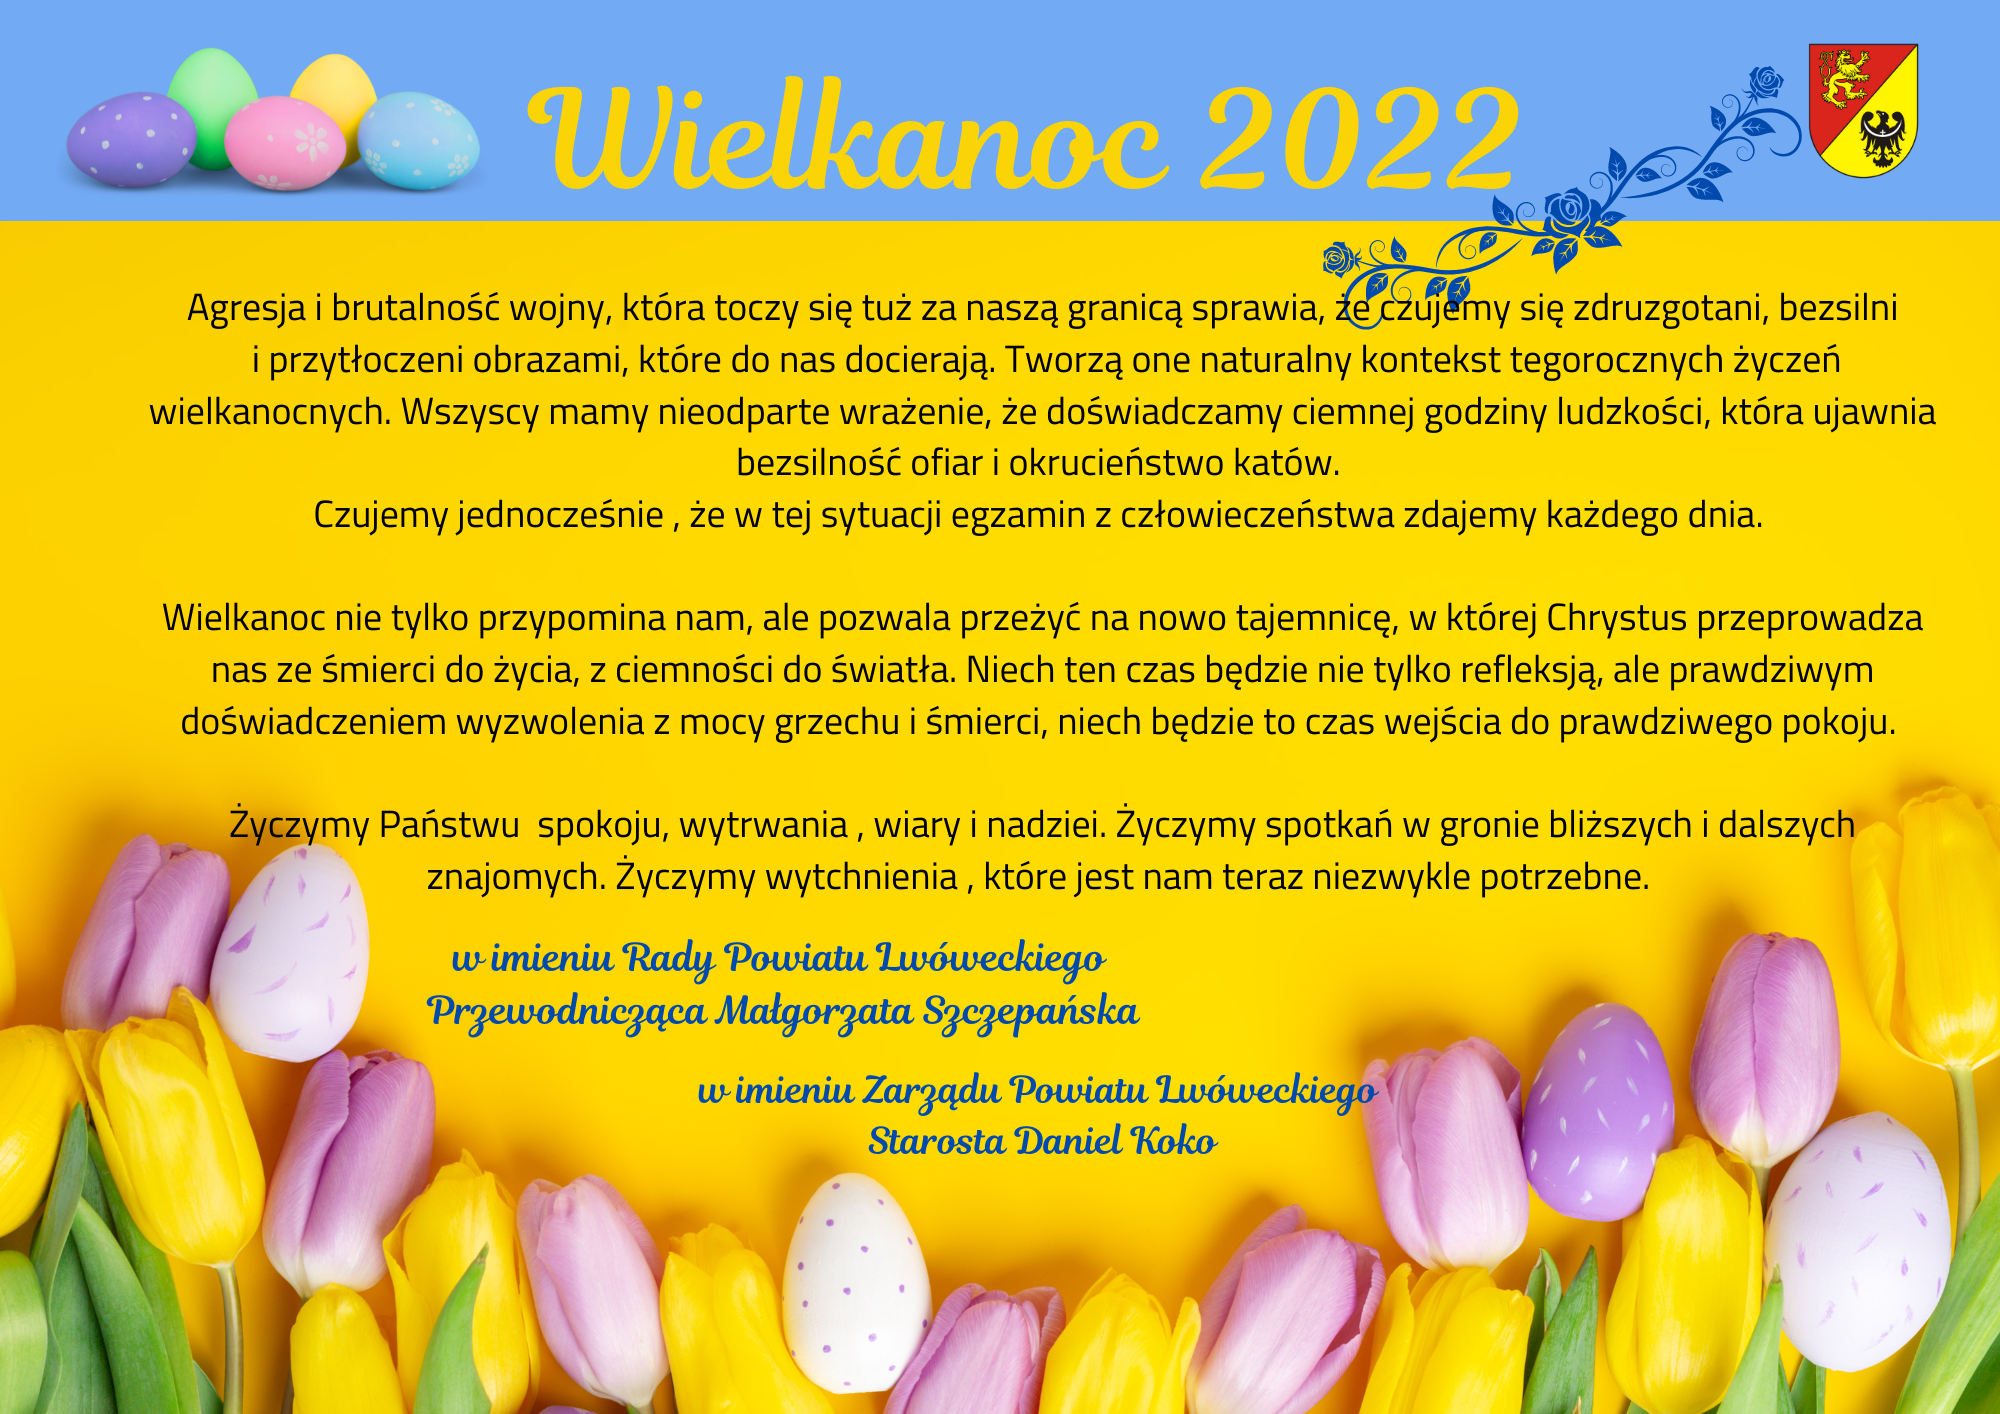 na niebieskim pasku od góry obrazka od lewej grafika pisanek, napis: Wielkanoc 2022, herb Powiatu Lwóweckiego, pozostała część na tle żółtym tekst życzeń (we wpisie) na dole obrazka białe, żółte i liliowe tulipany, gdzieniegdzie pisanka